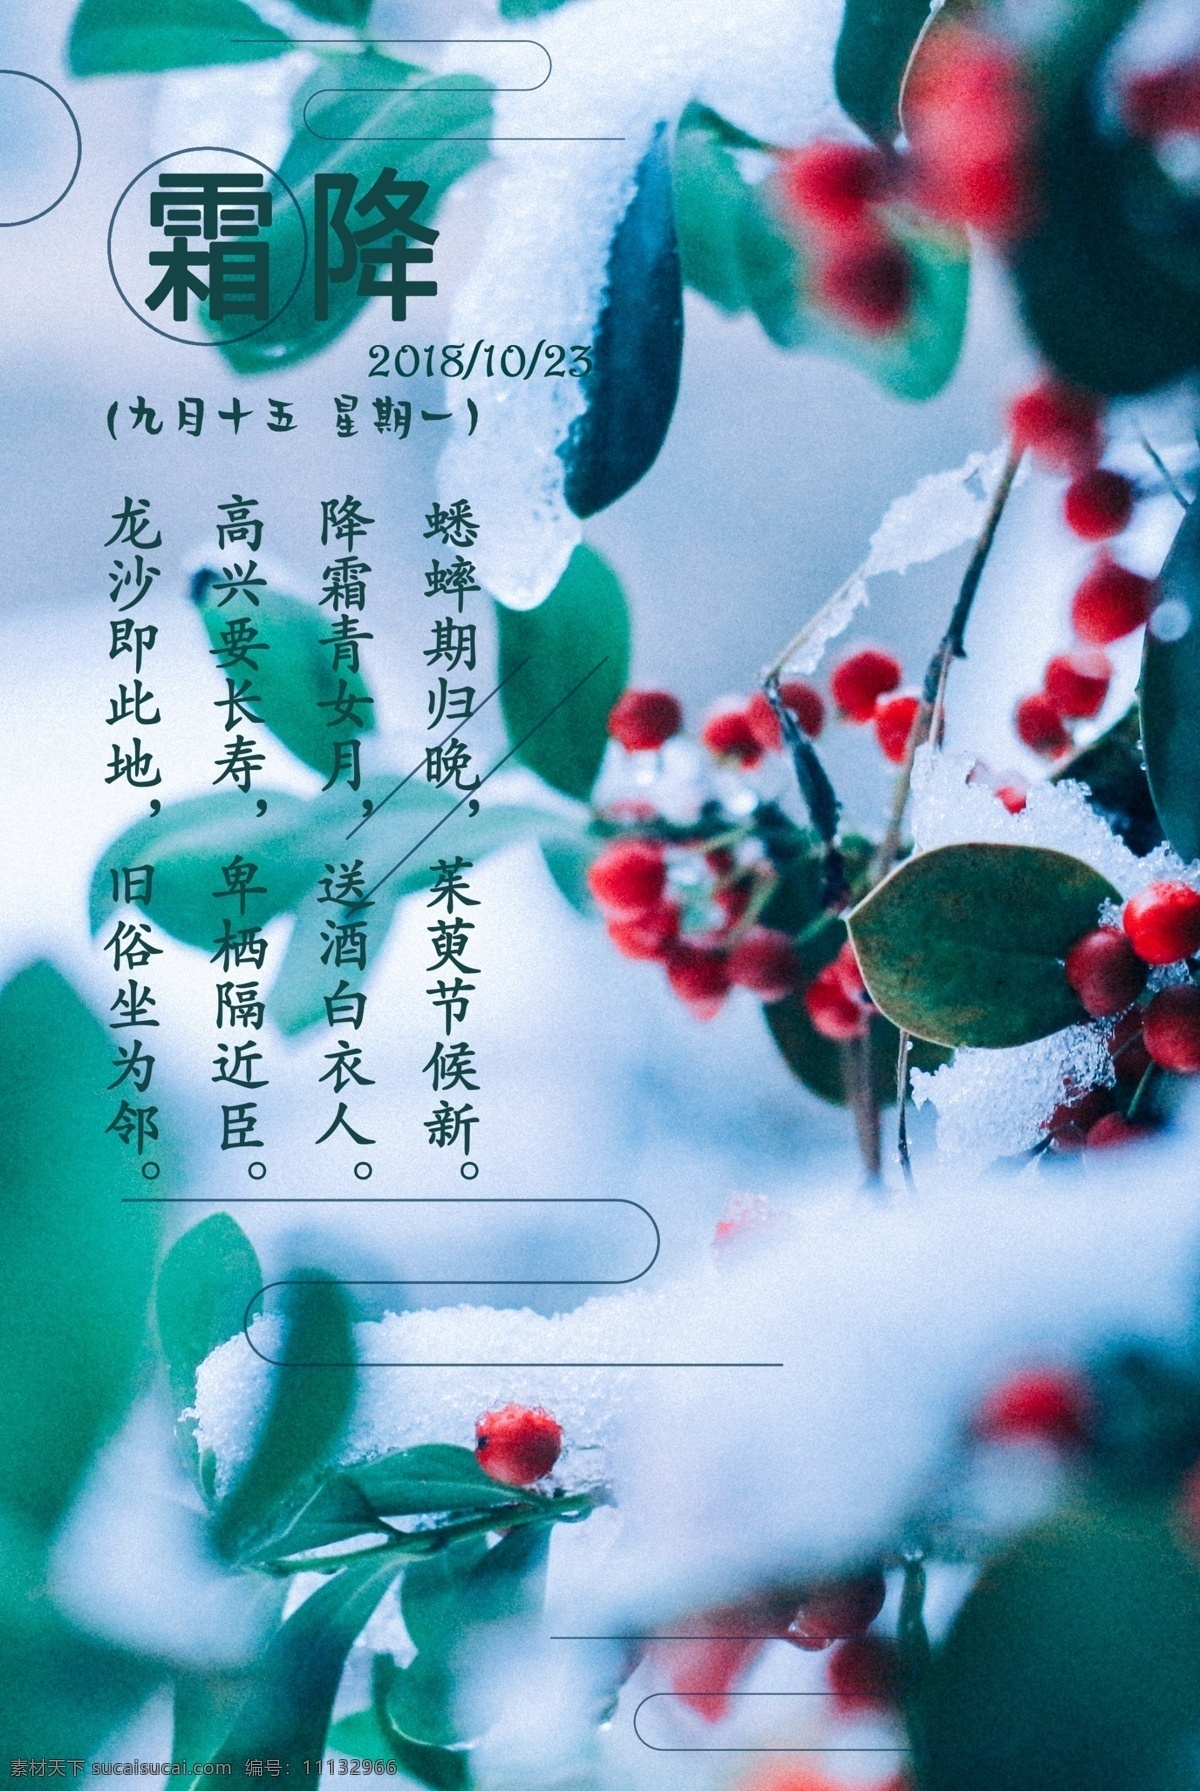 植物 背景 简约 霜降 节日 海报 二十四节气 传统节气 植物背景 节日海报